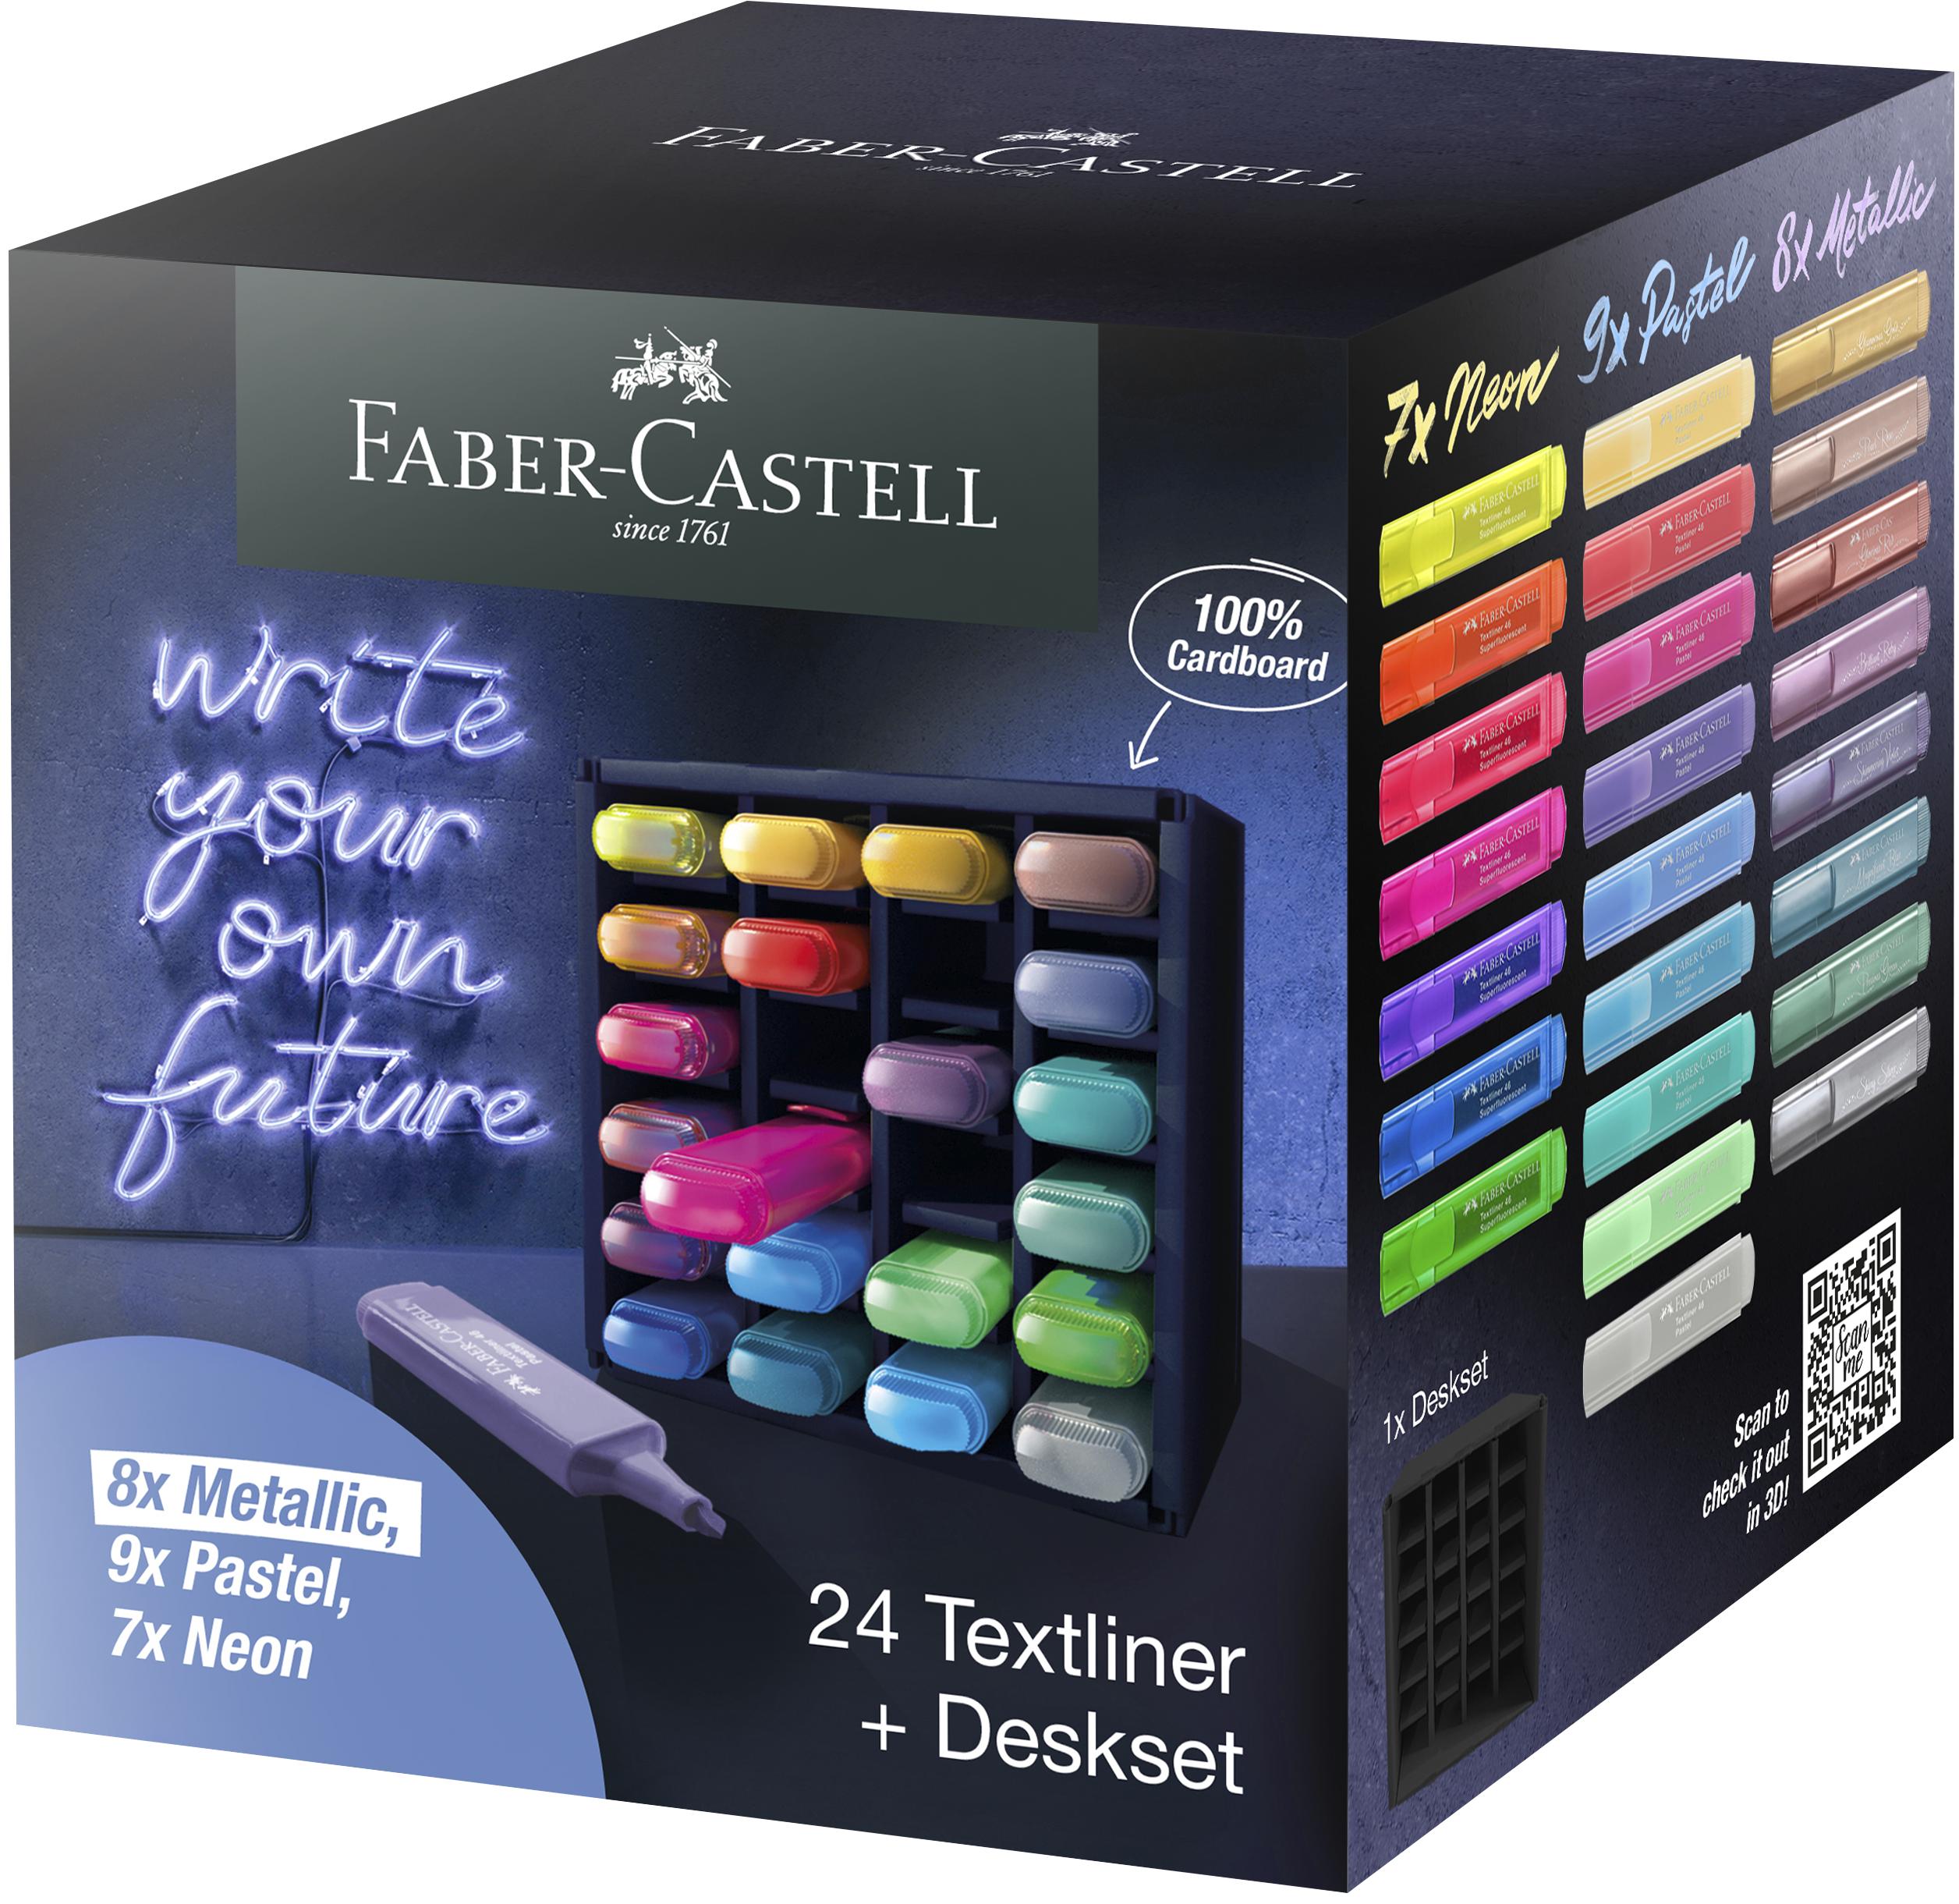 Faber-Castell - Highlighter TL 46 deskset (24 pcs) (254602) - Leker